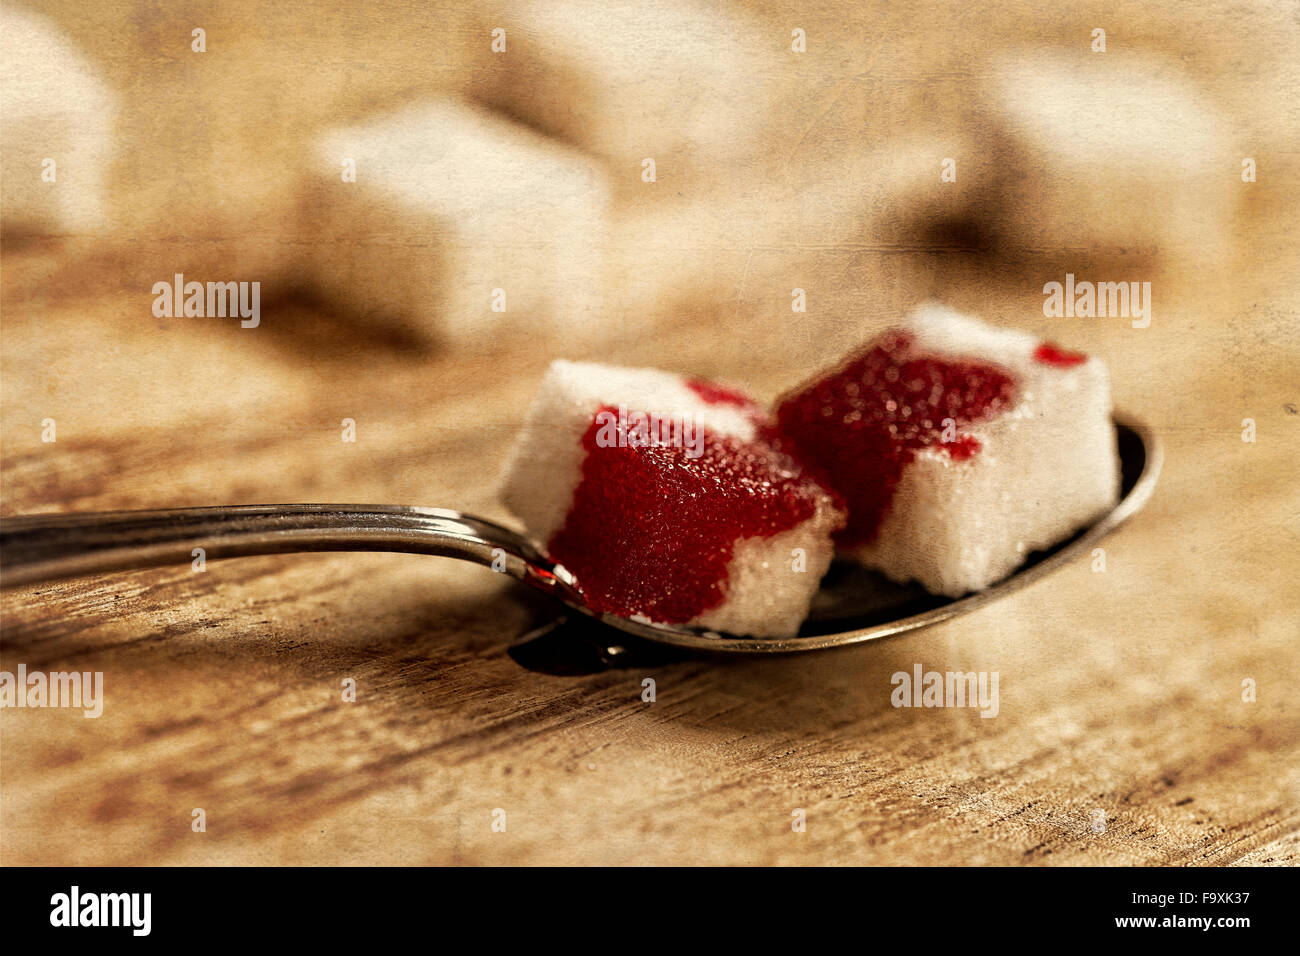 Zollette di zucchero con il sangue sul cucchiaio Foto Stock